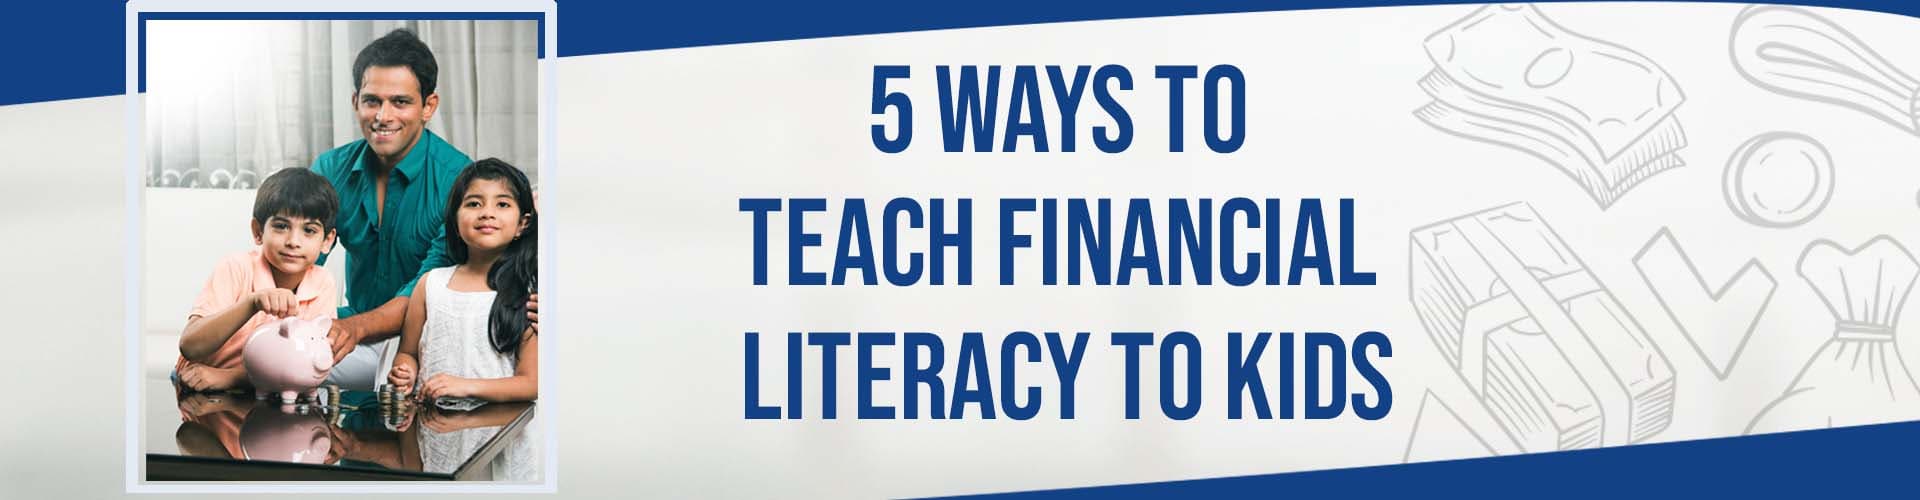 5 Ways to Teach Financial Literacy to Kids